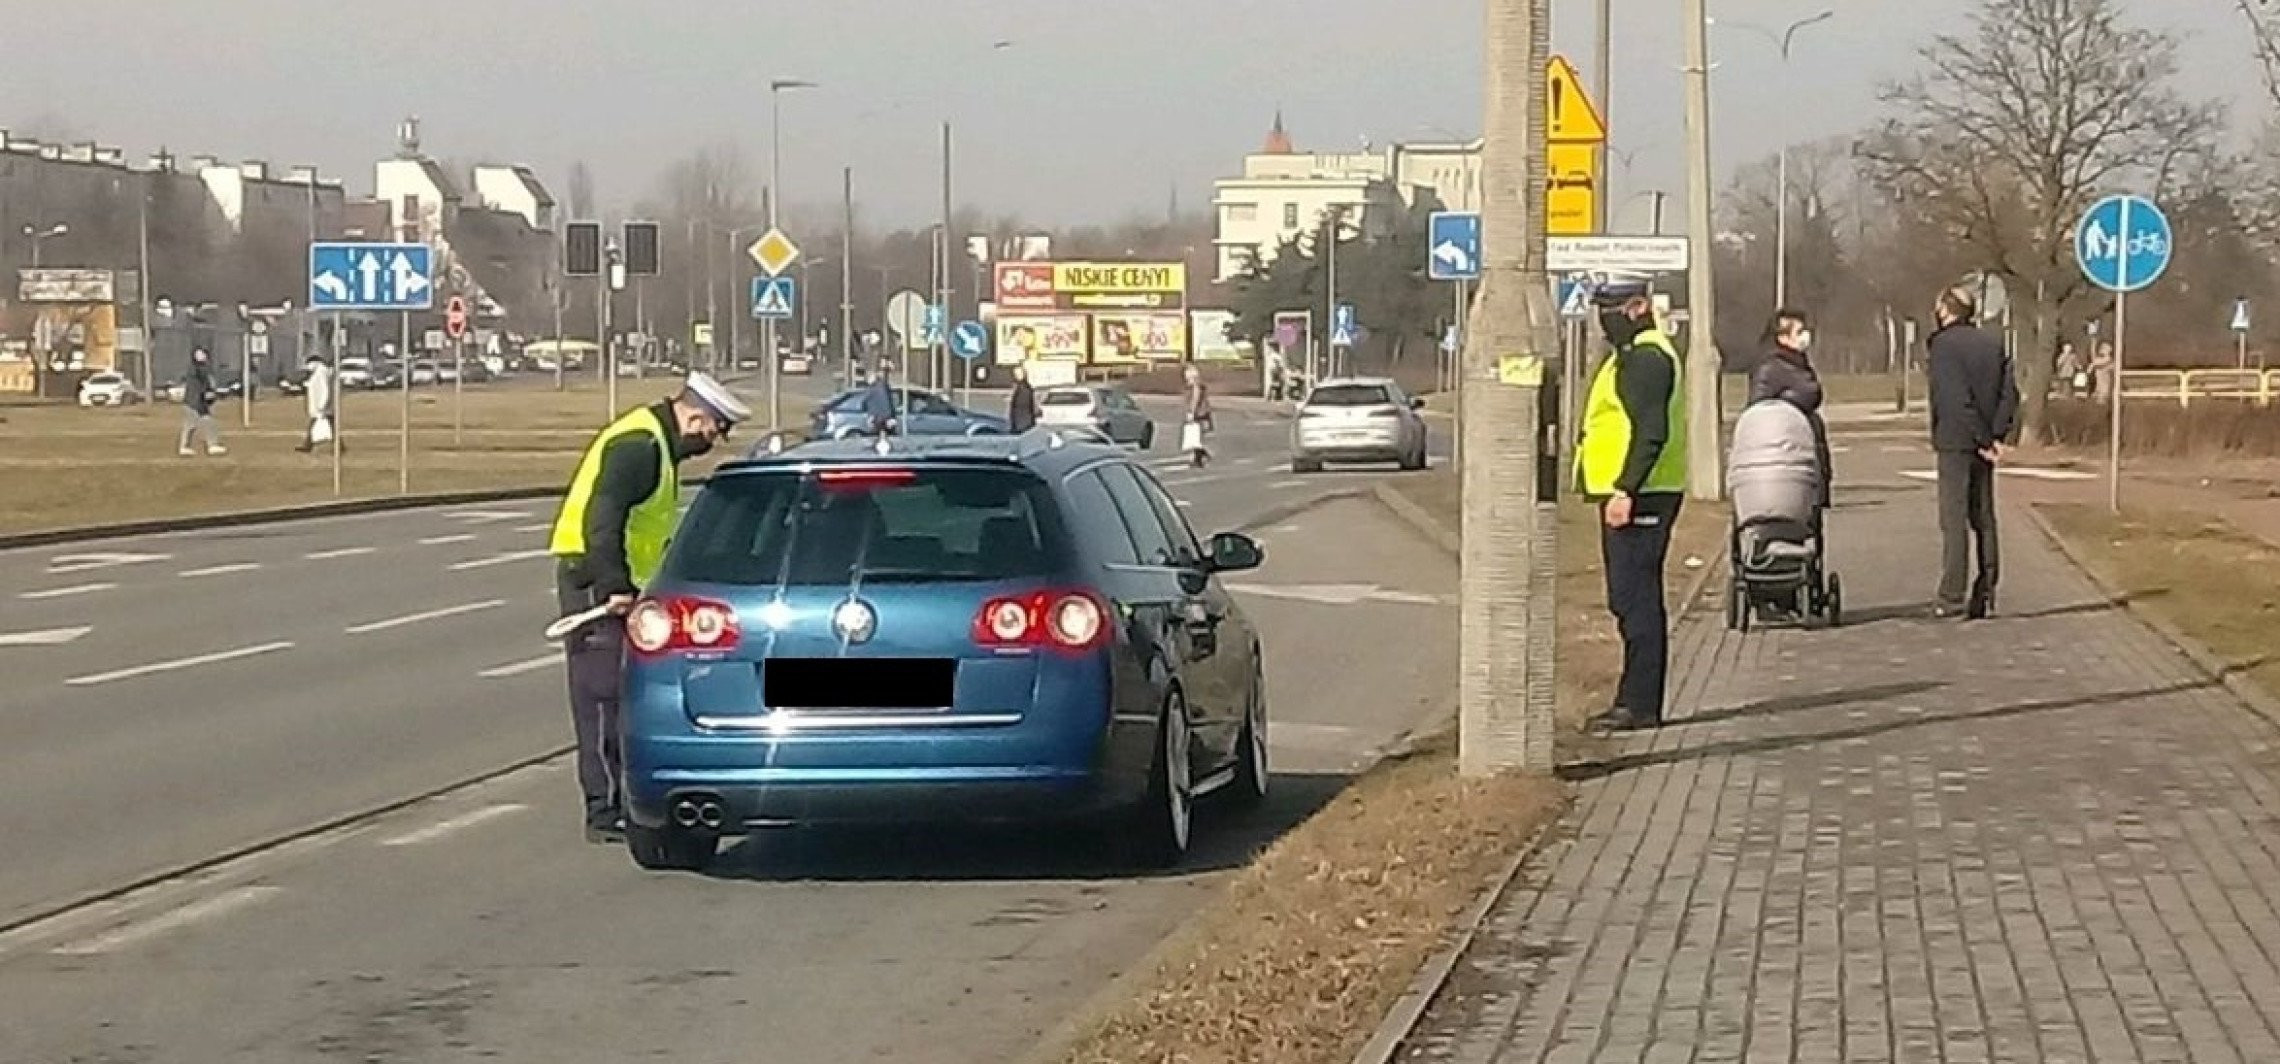 Inowrocław - 7 na 10 kierowców jechało za szybko